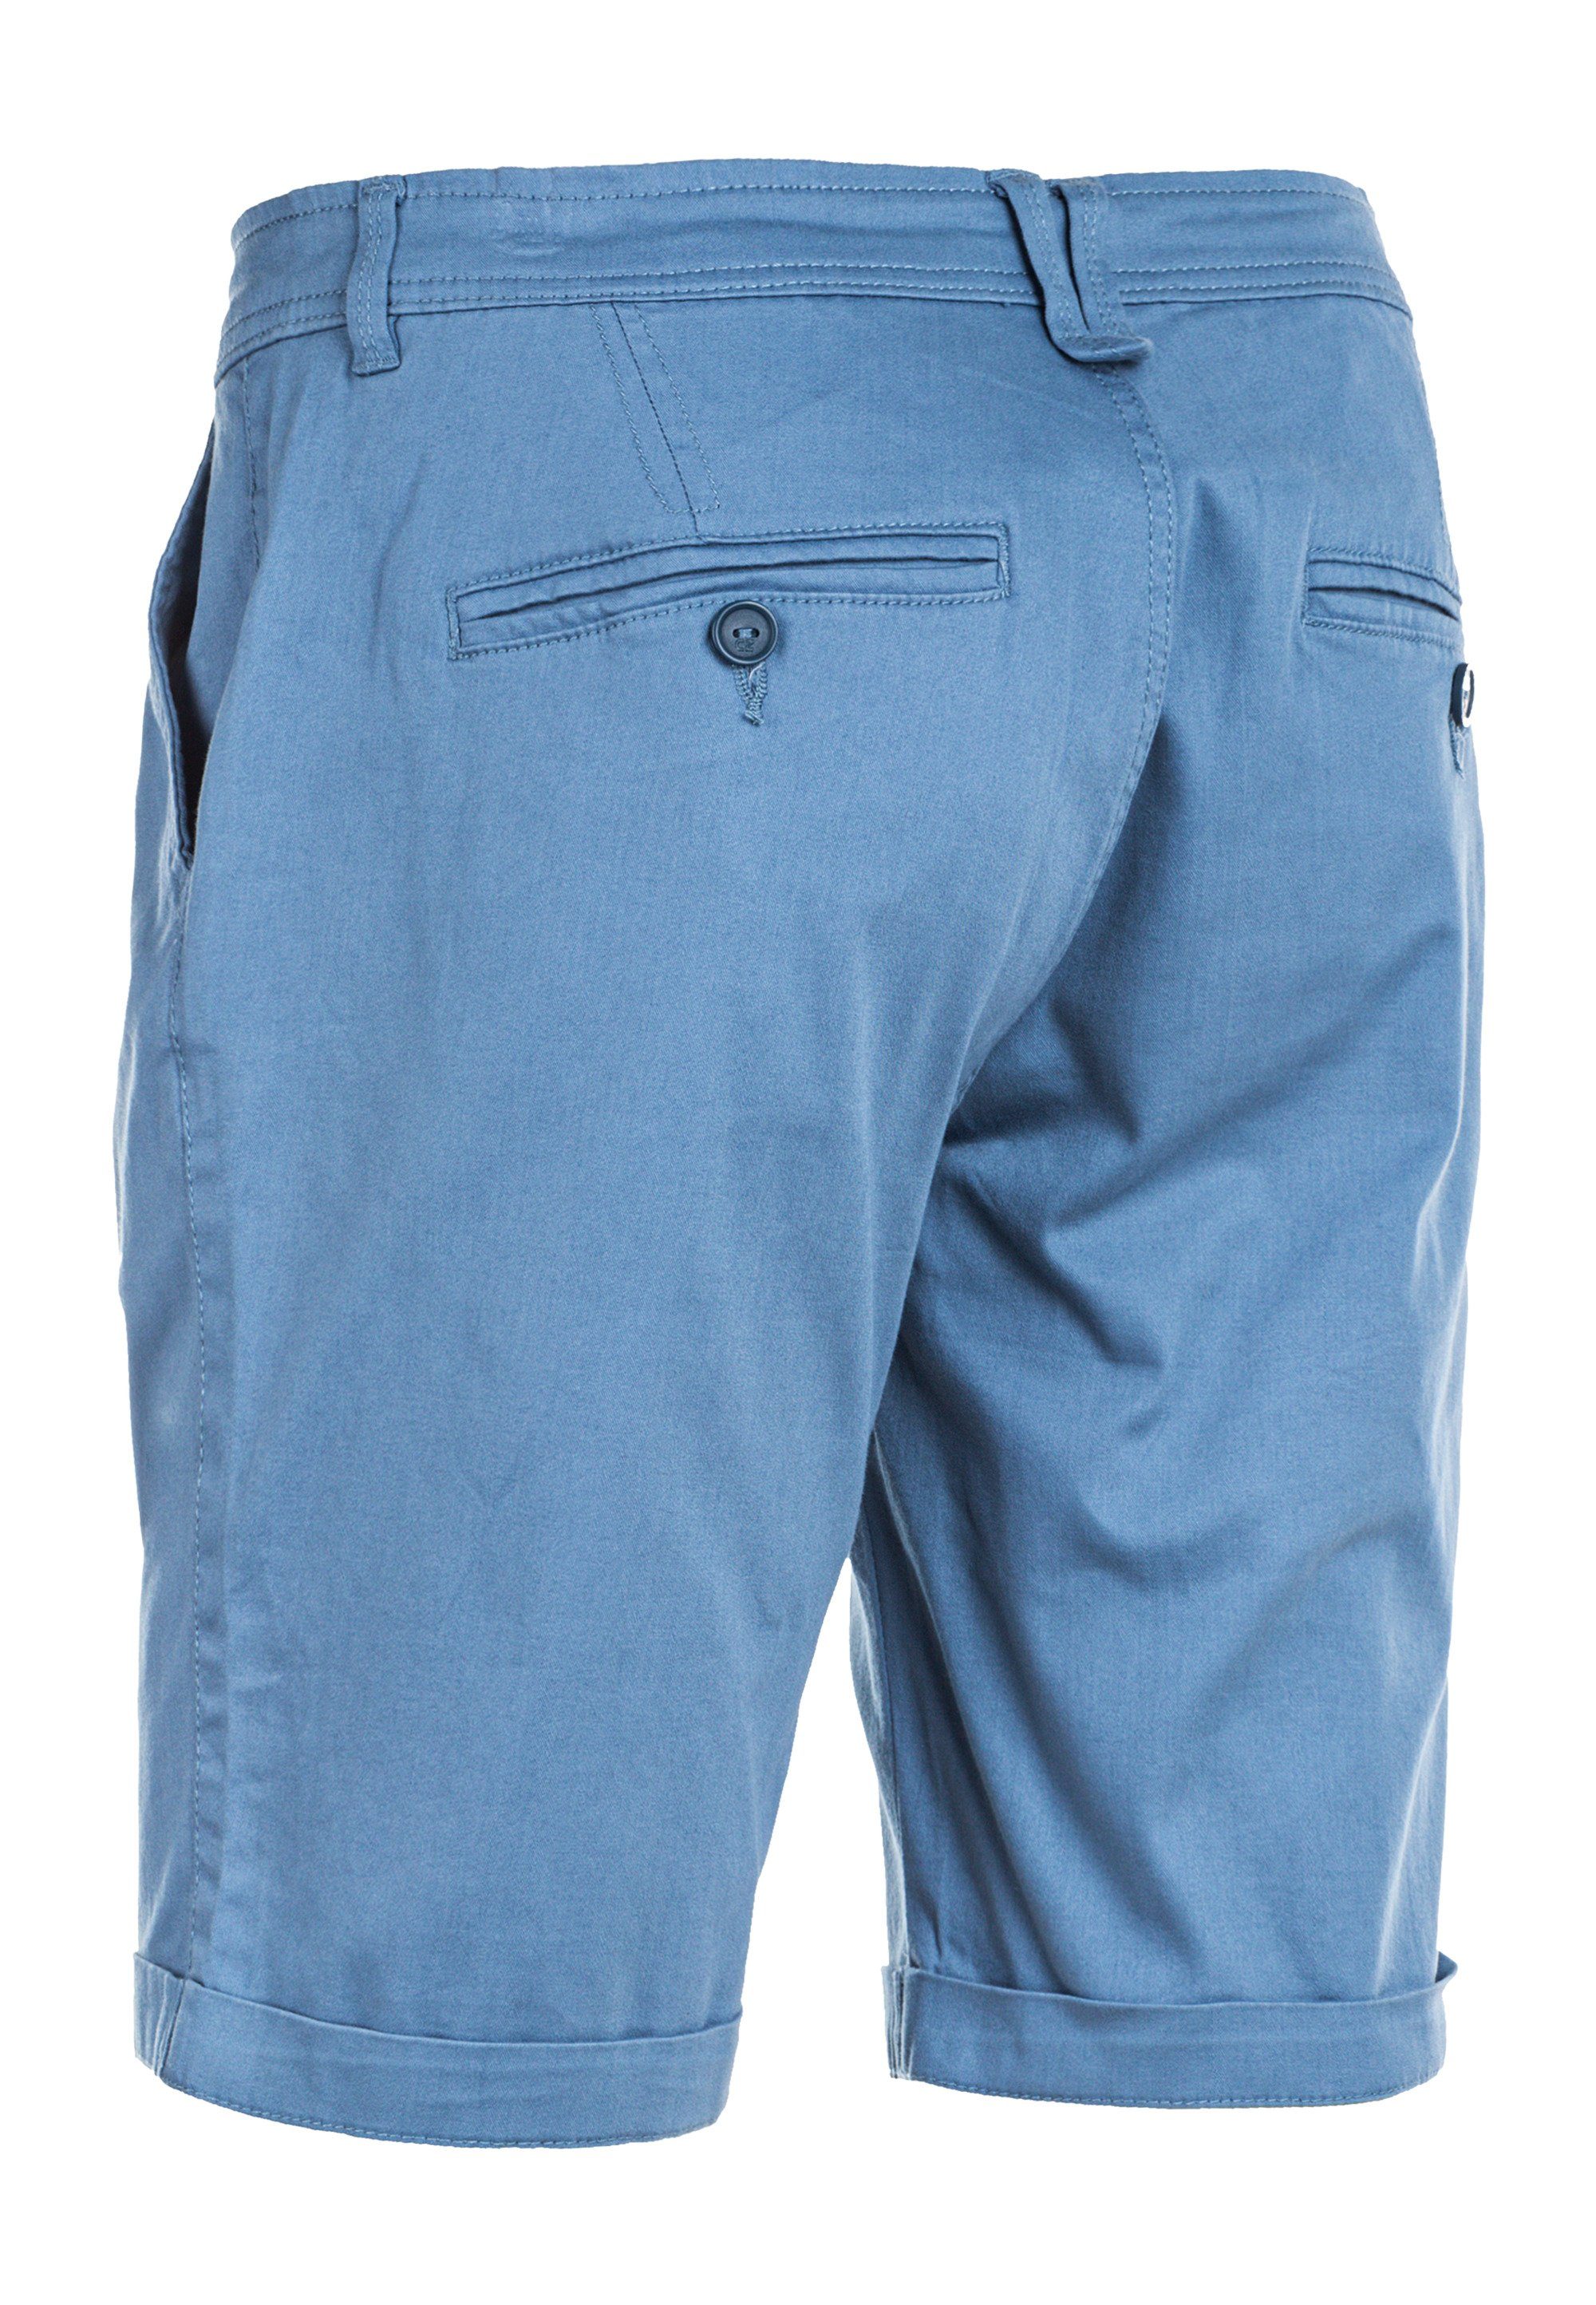 CRUZ praktischen mit Jerryne Seitentaschen hellblau Shorts